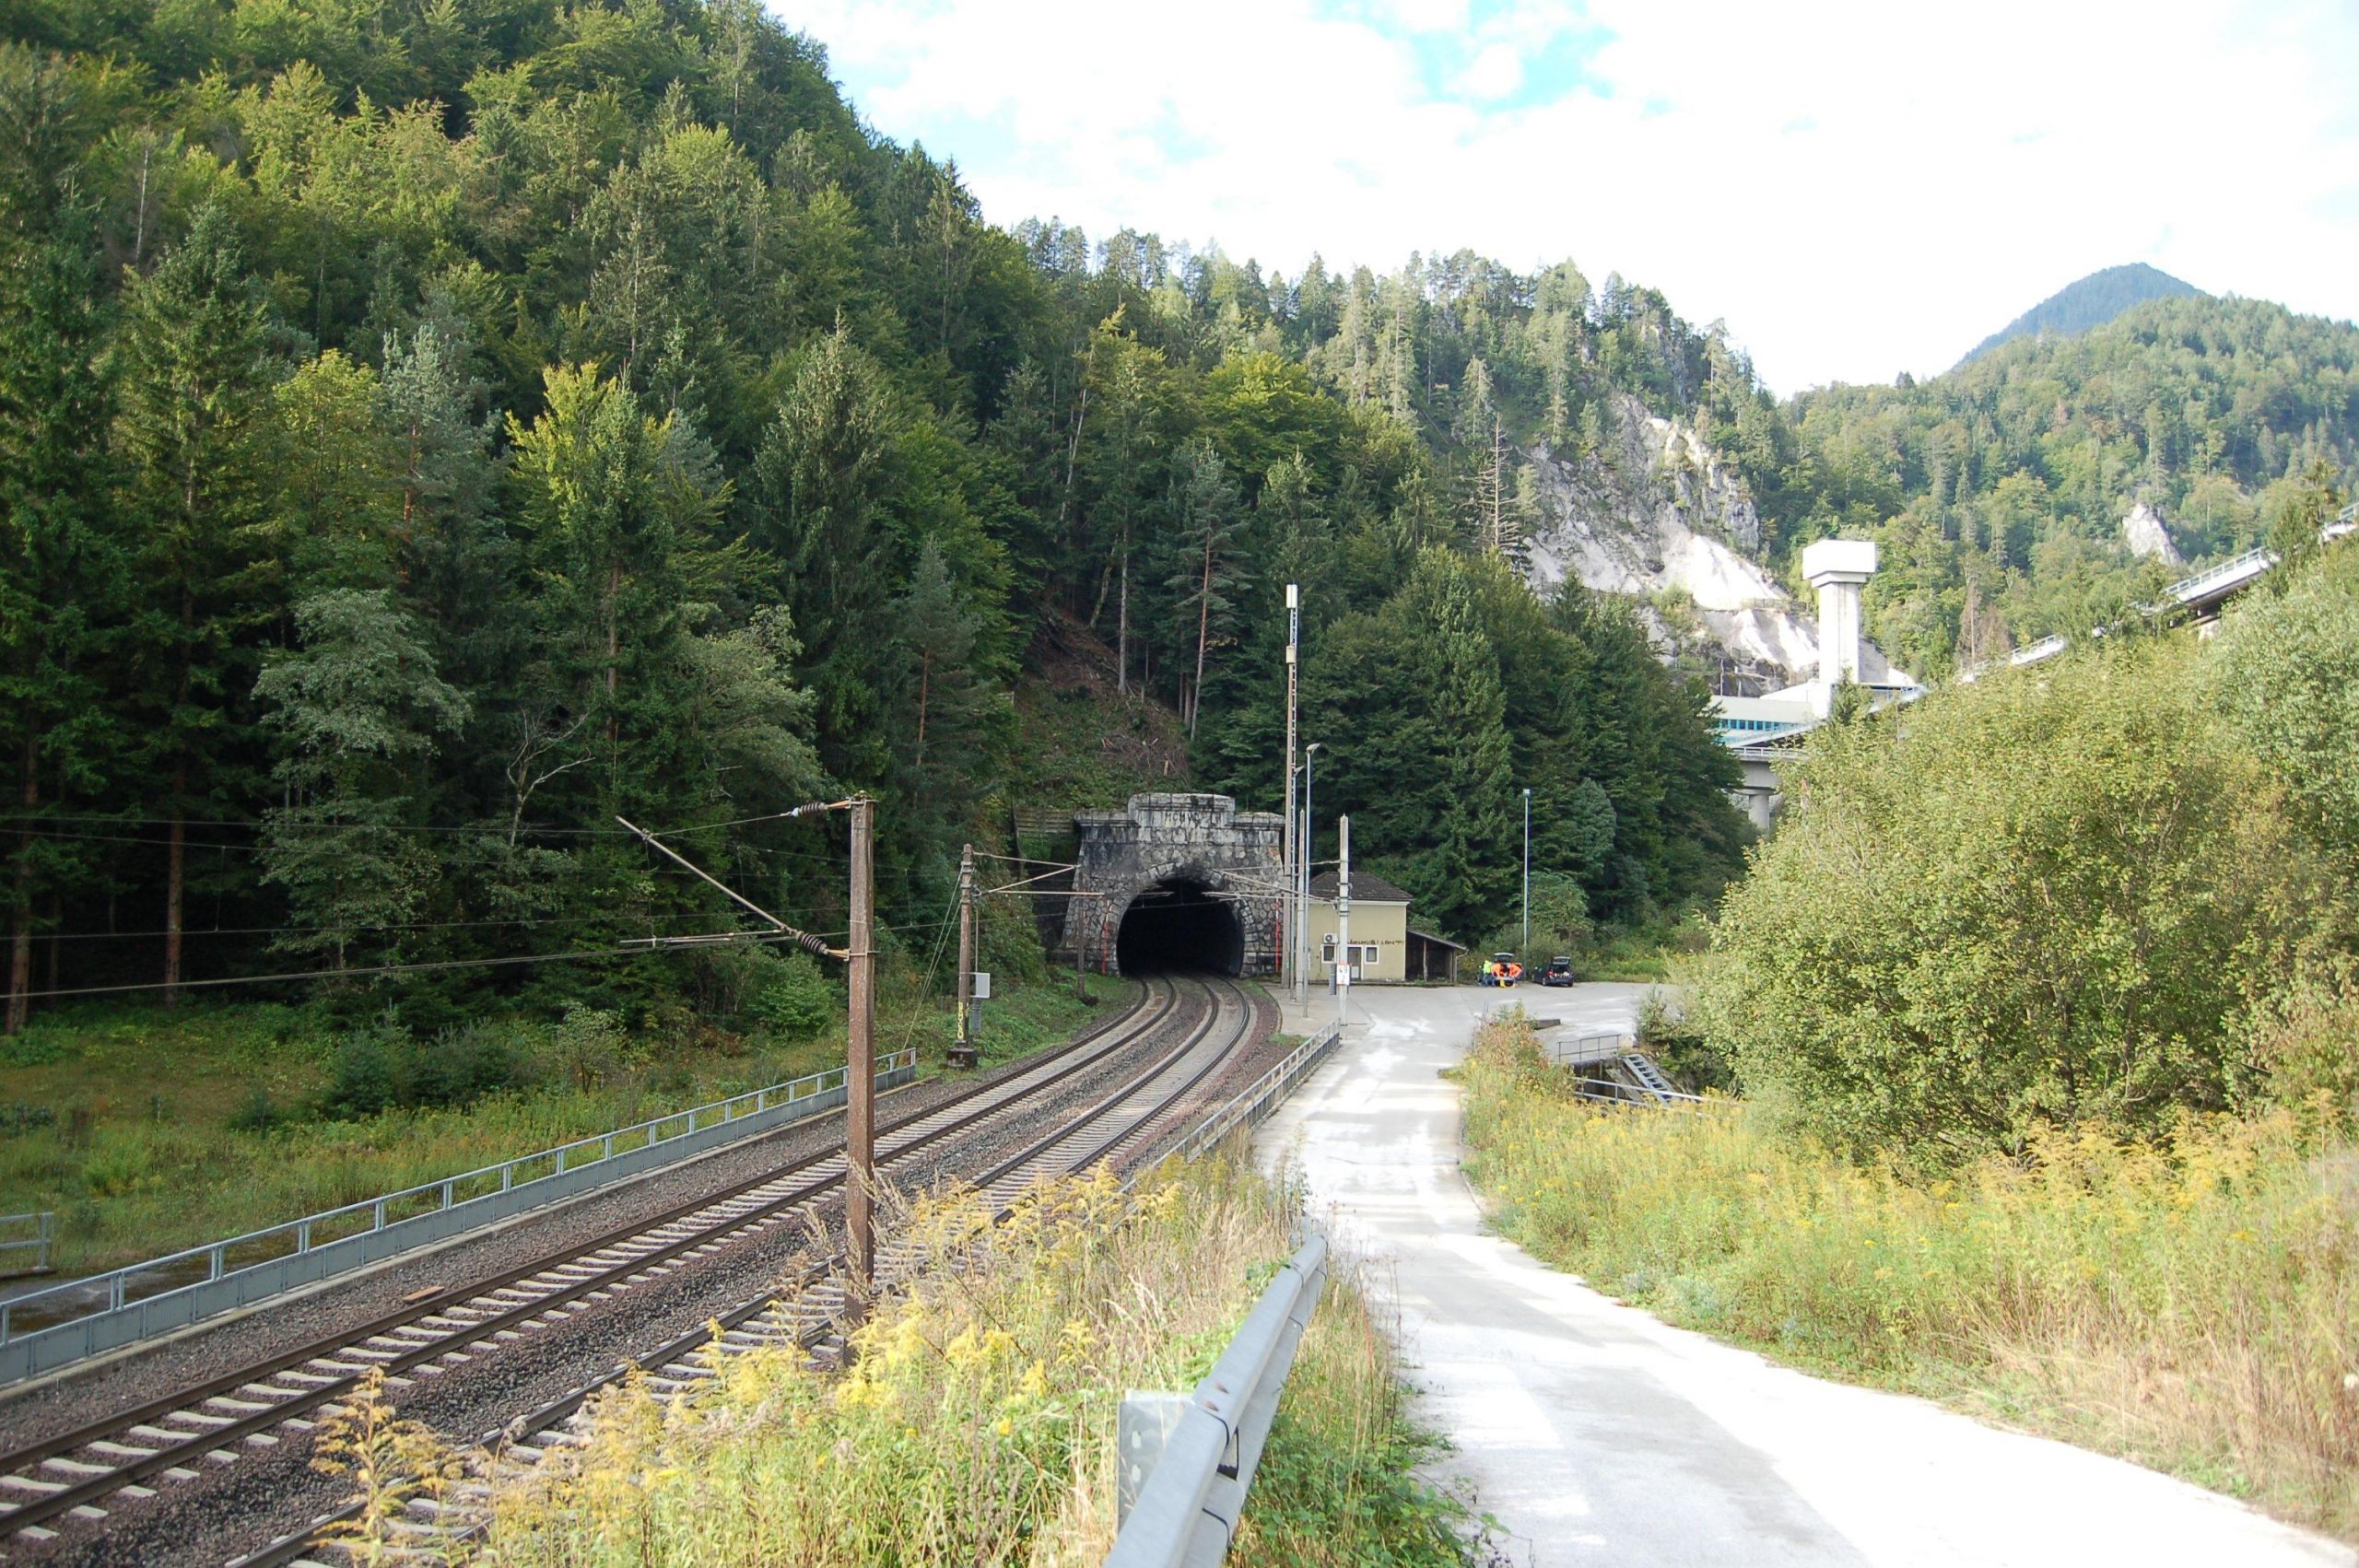 Karawankentunnel vor Baubeginn in Blickrichtung Tunnel